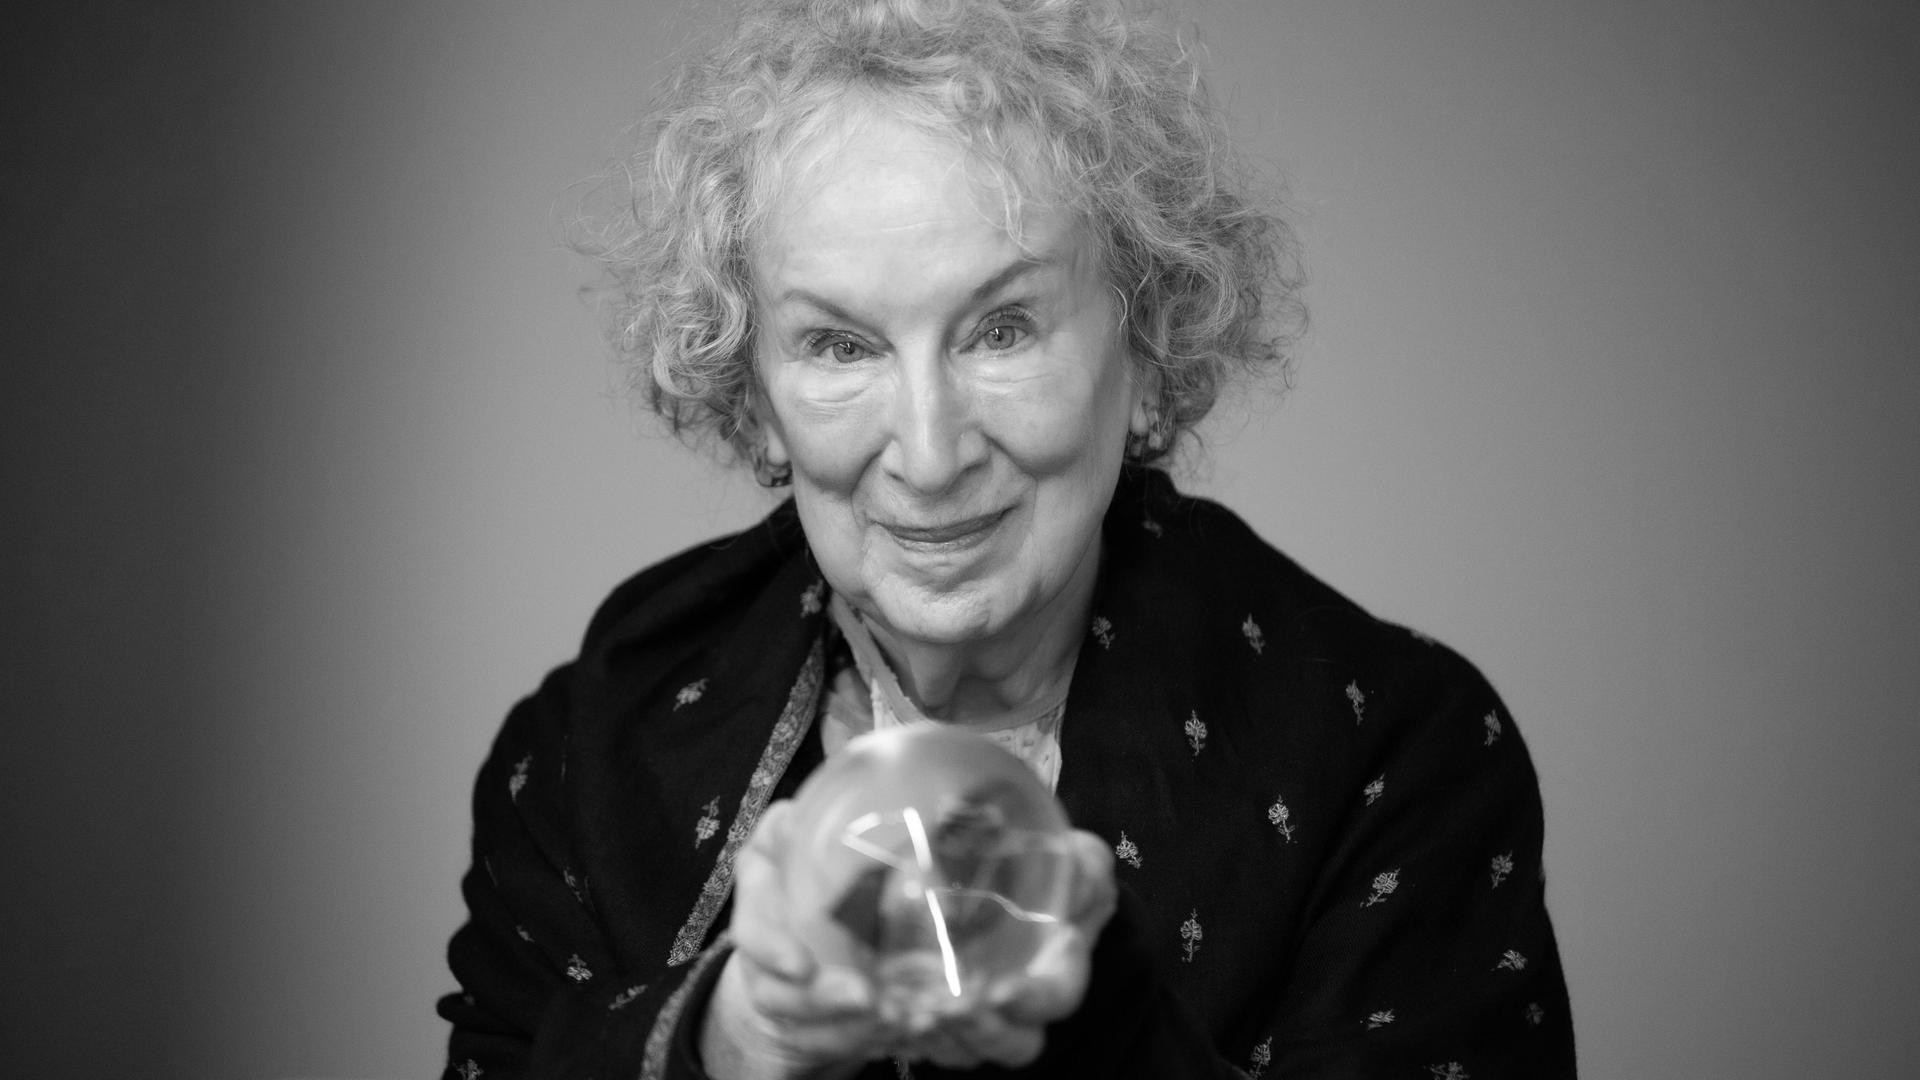 Porträt der kanadischen Schriftstellerin Margaret Atwood mit einer Glaskugel in der Hand, 2021.